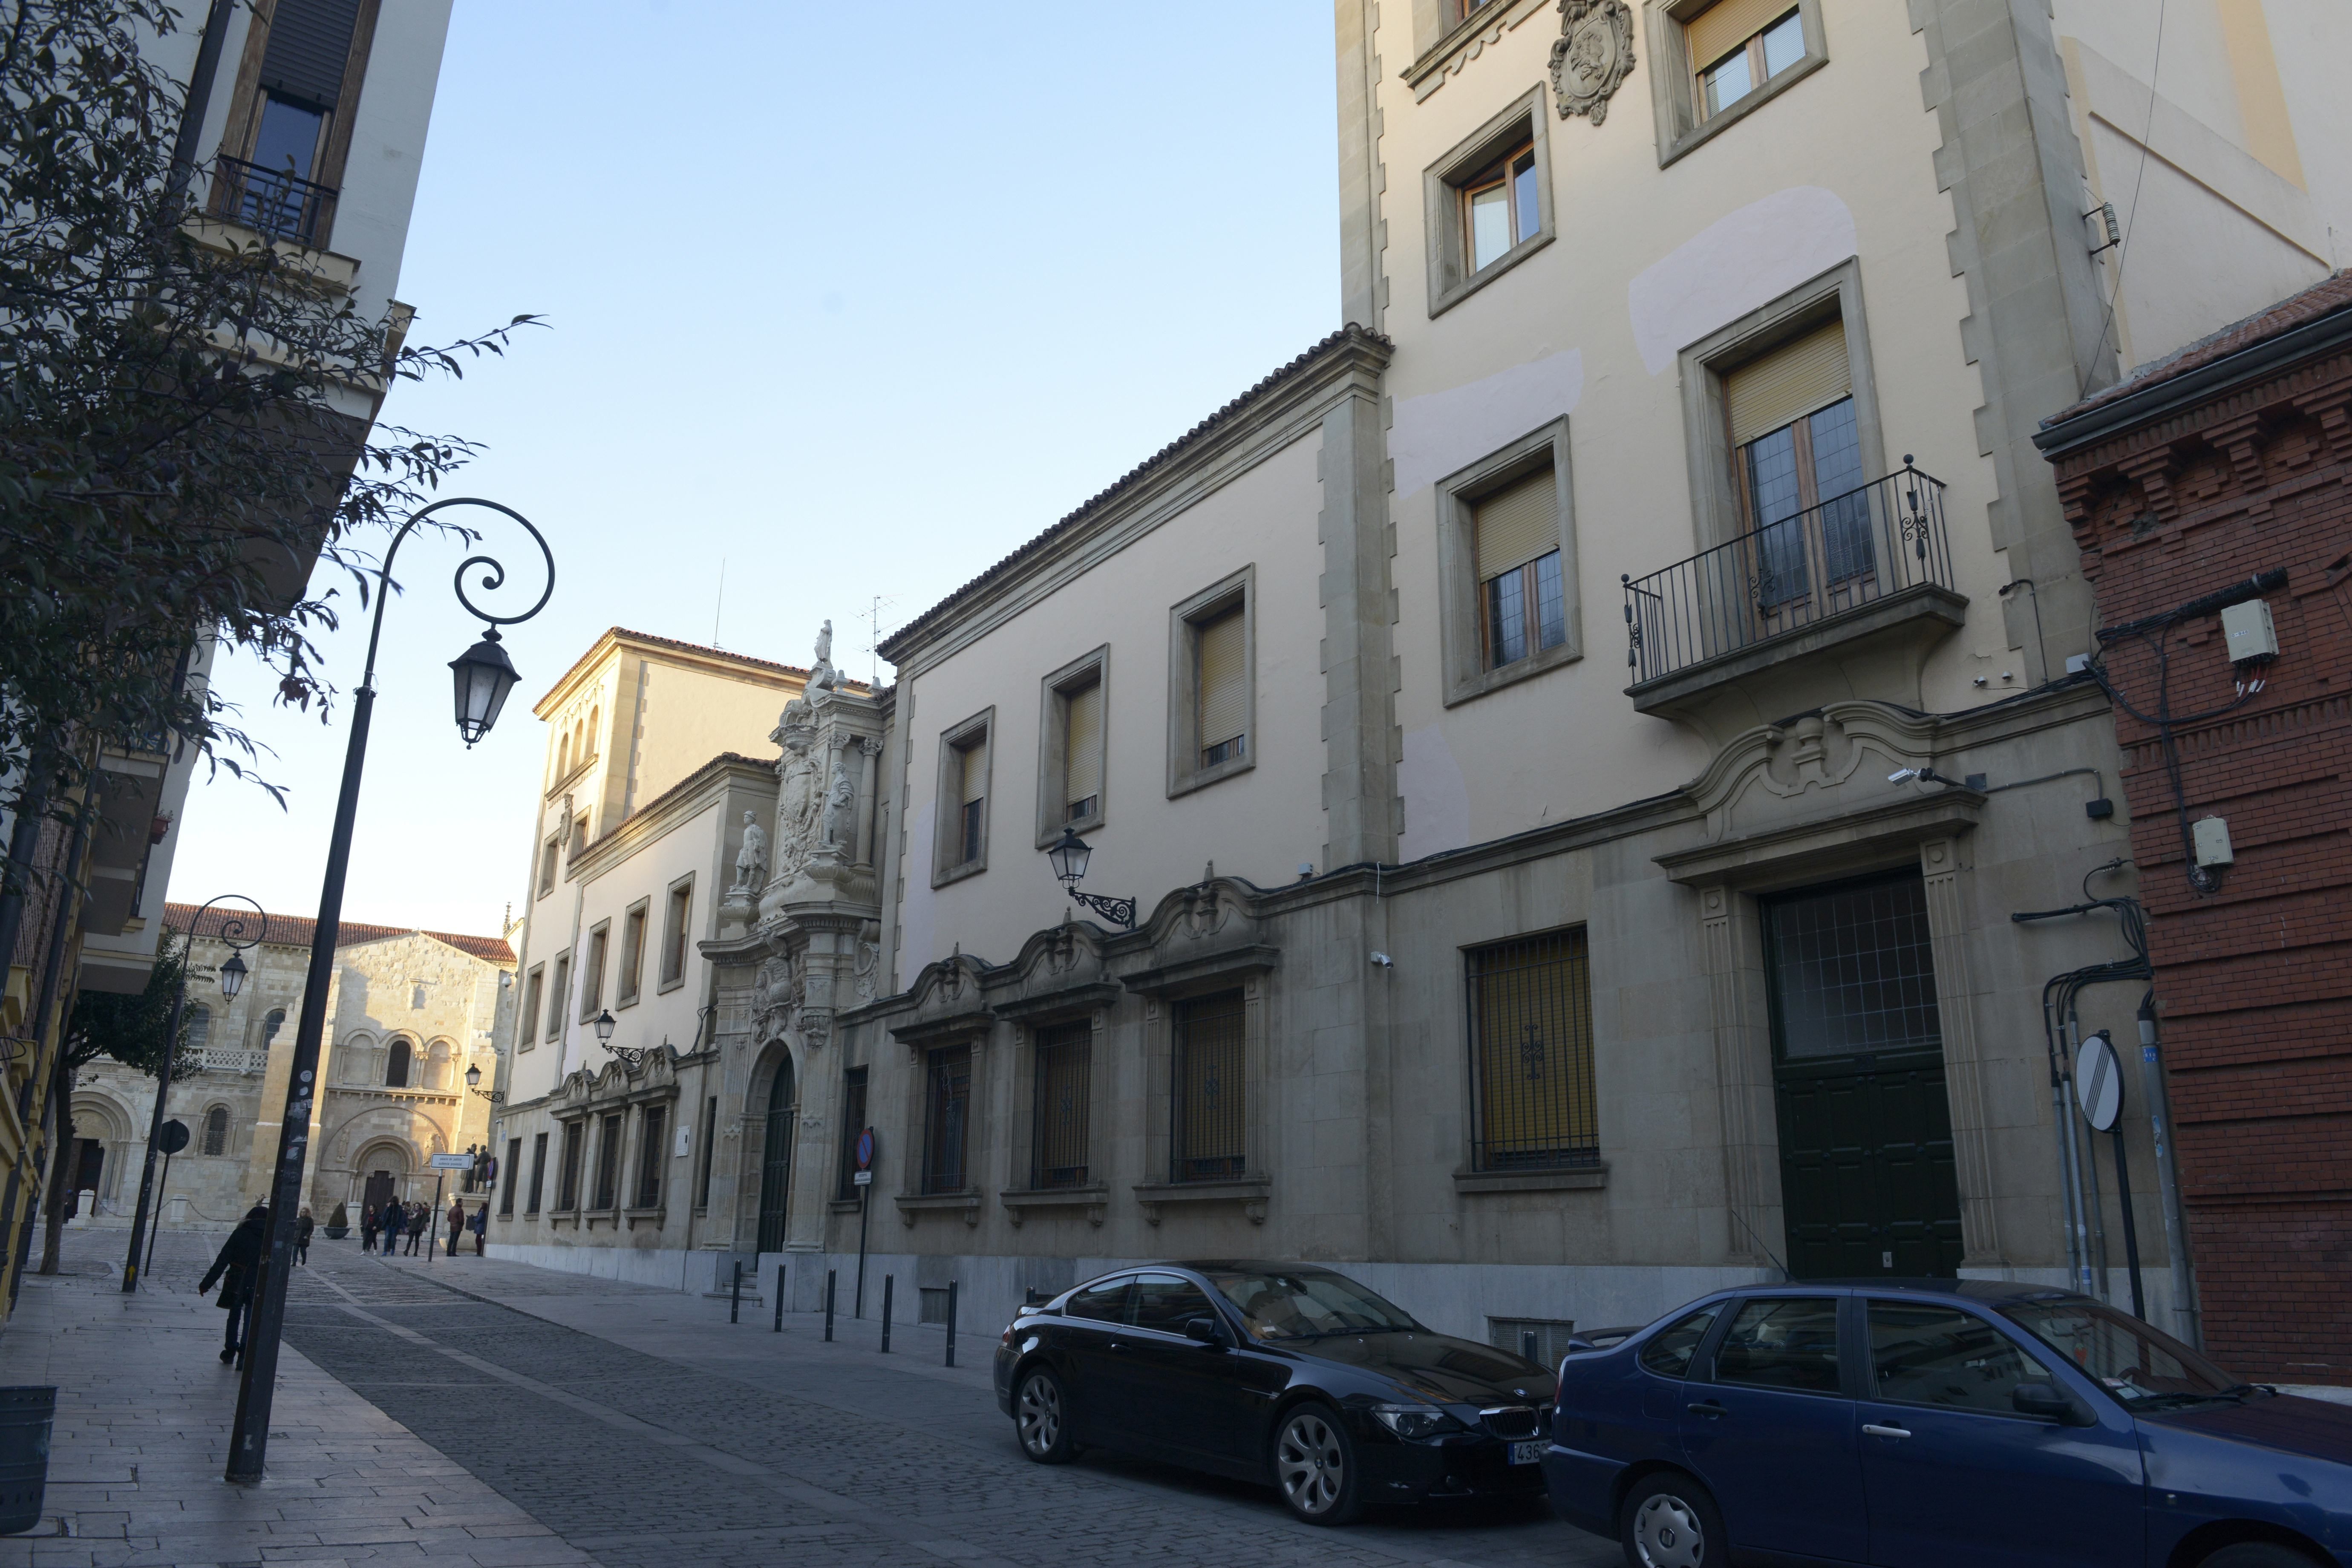 El juicio se celebrará este lunes, 29 de abril, en la Audiencia Provincial de León. | MAURICIO PEÑA